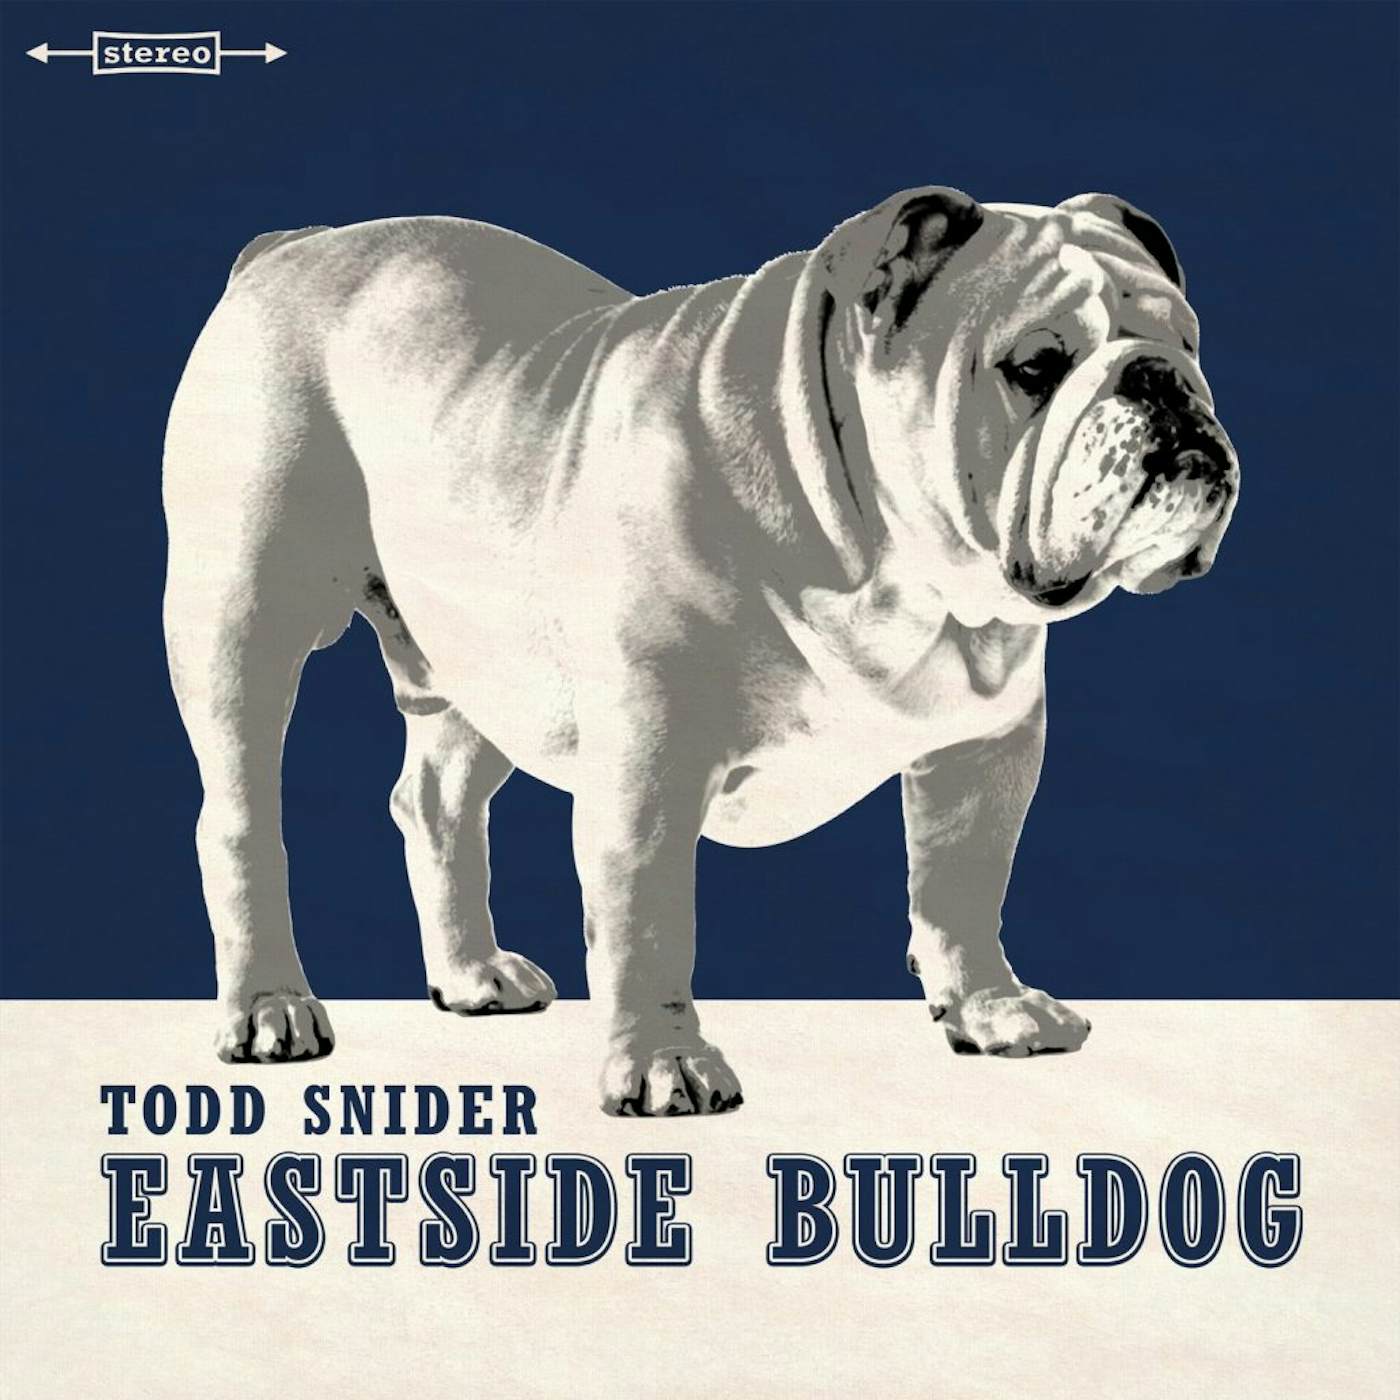 Todd Snider EASTSIDE BULLDOG CD